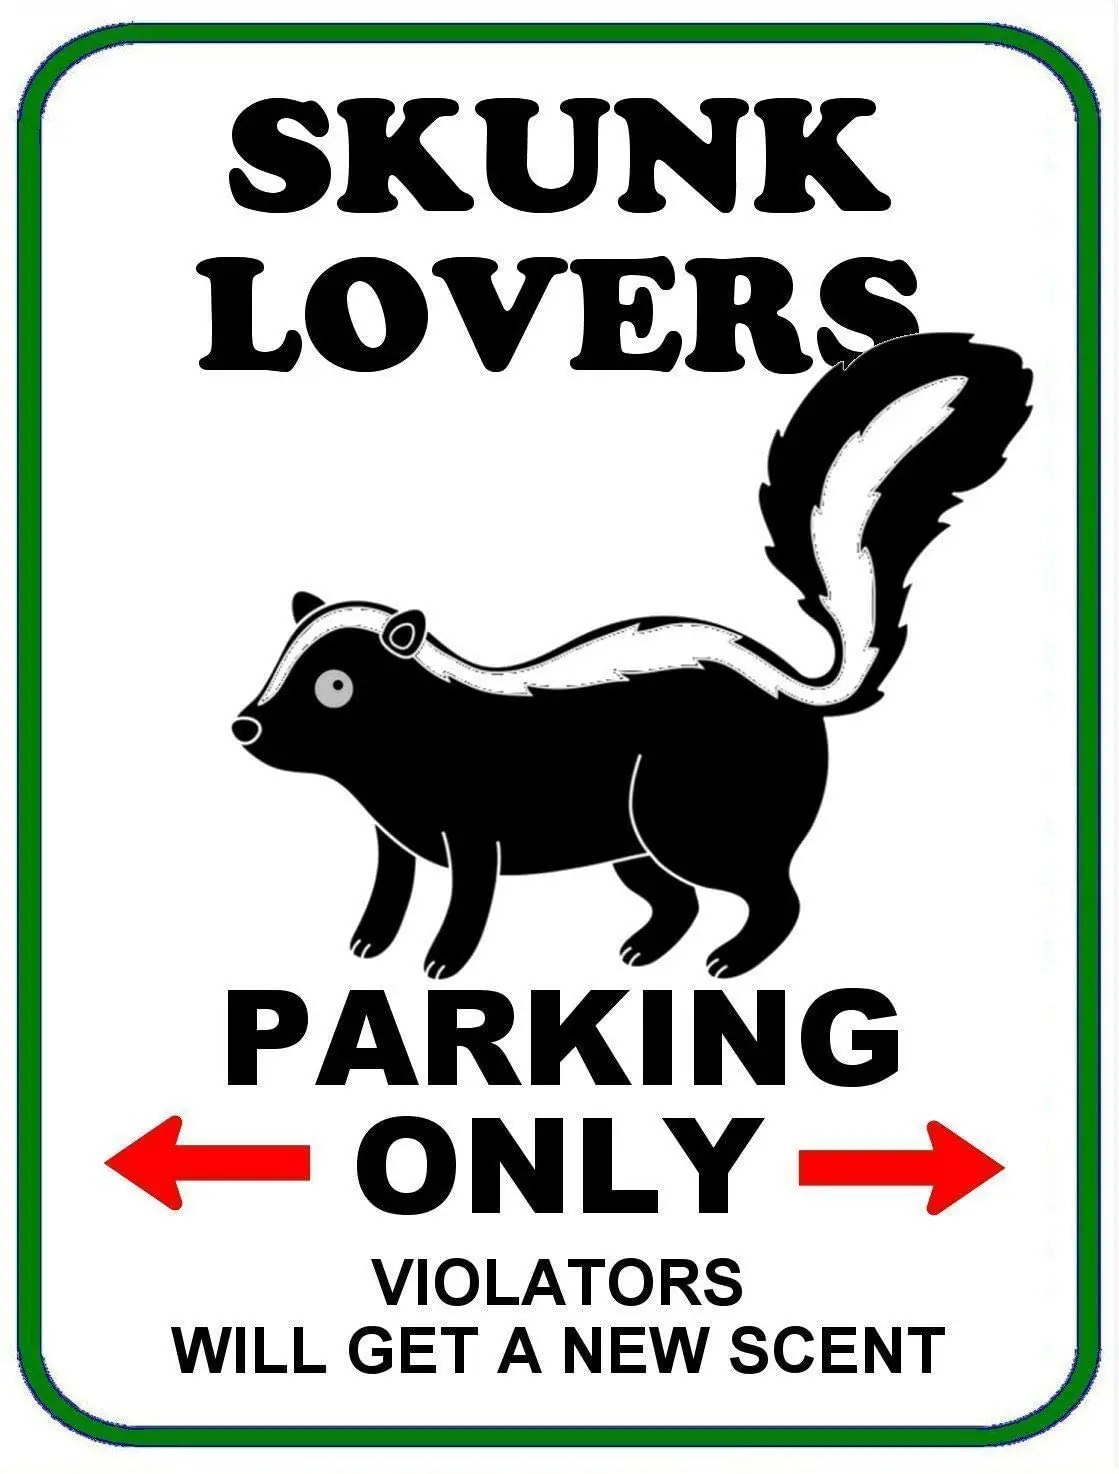 

Skunk влюбленные парковка только металлический жестяной знак Настенный декор искусство 8x12 дюймов (20x30 см)